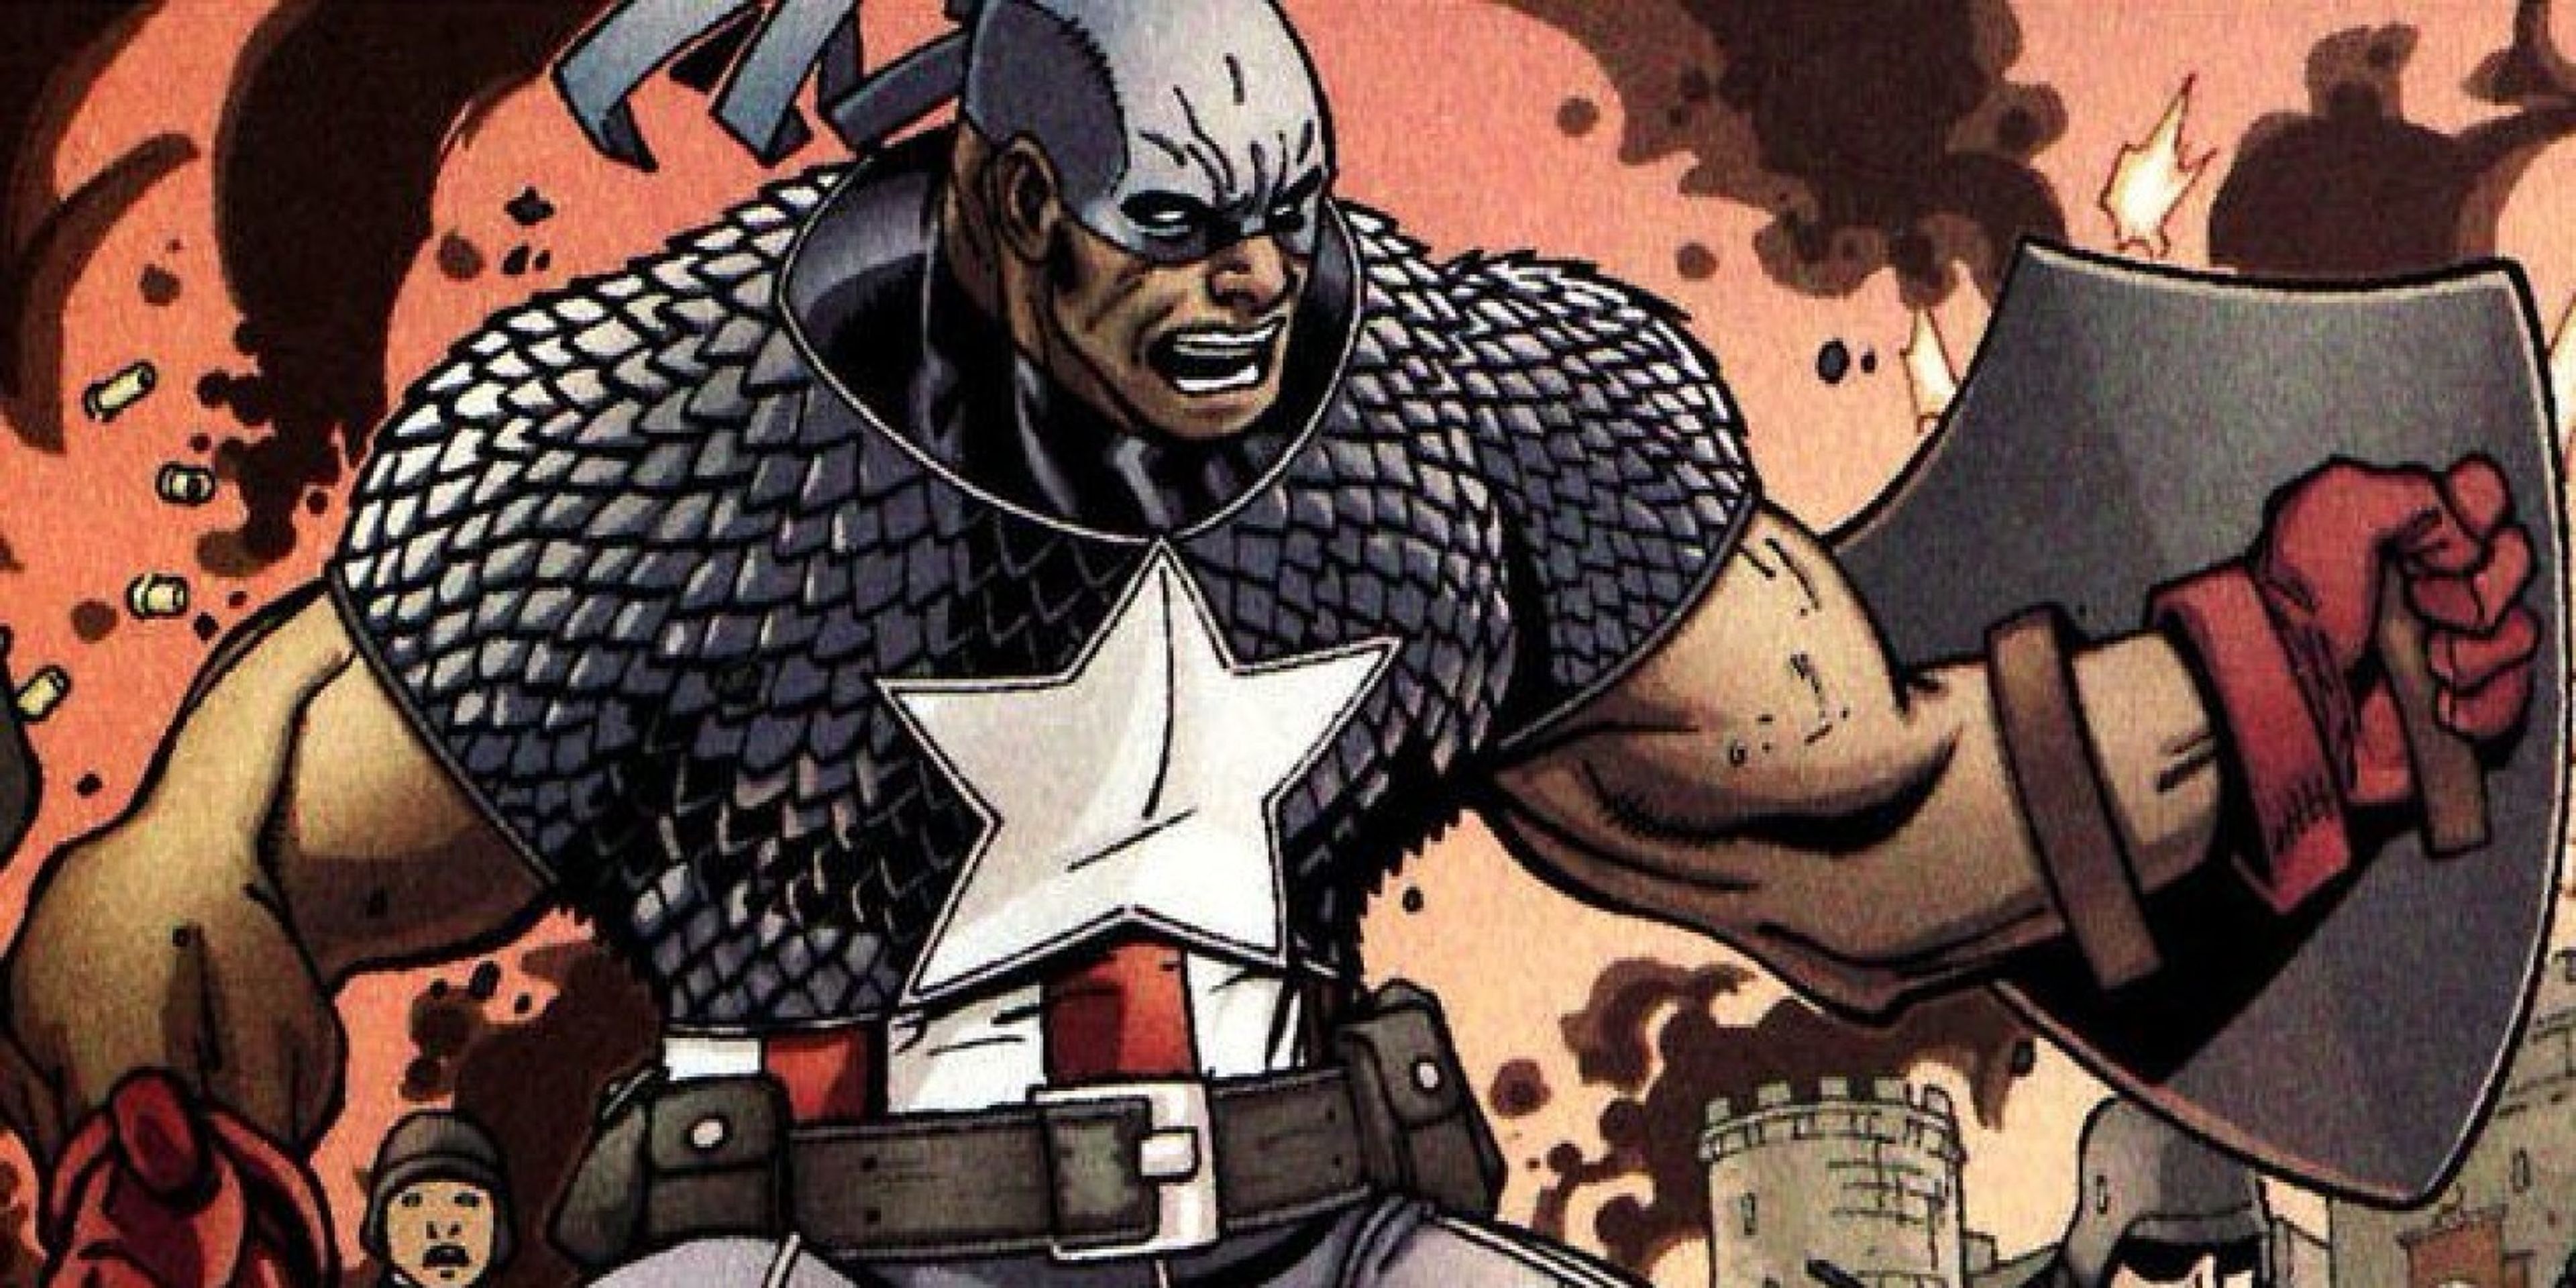 Isaiah Bradley - Capitán América